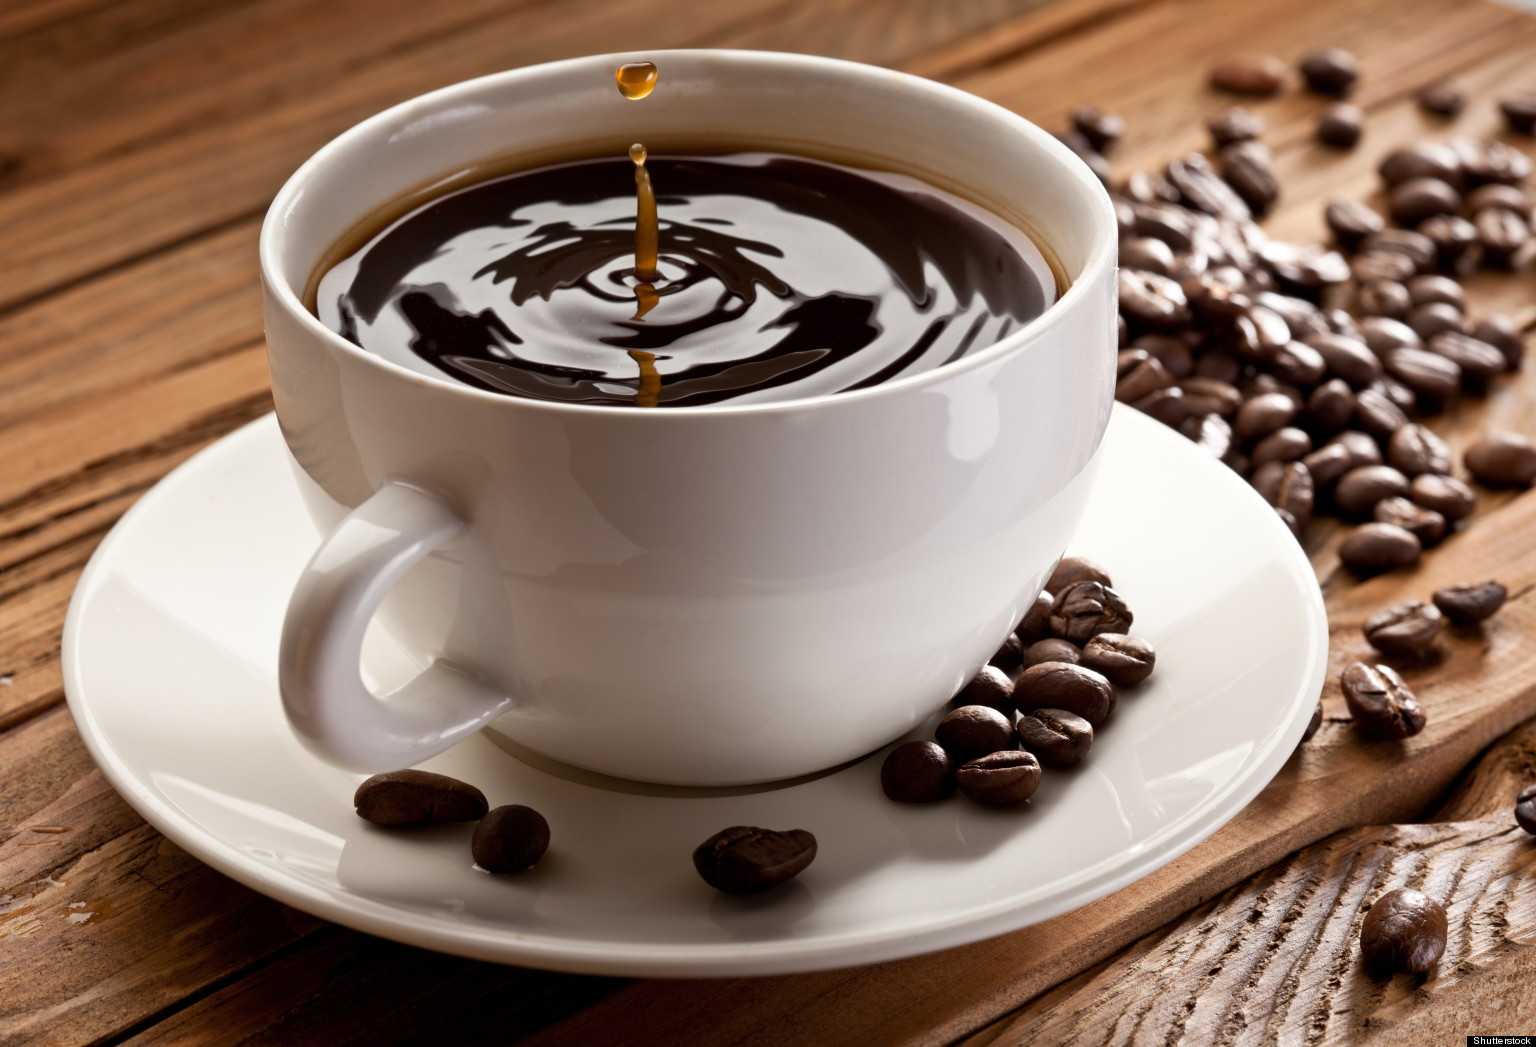 ขายเมล็ดกาแฟ ธุรกิจสร้างรายได้ เพื่อคนรักกาแฟ “ สยามเบส คอฟฟี่ “ -  Smeleader : เริ่มต้นธุรกิจ, ธุรกิจ Smes, แฟรนไชส์และอาชีพ